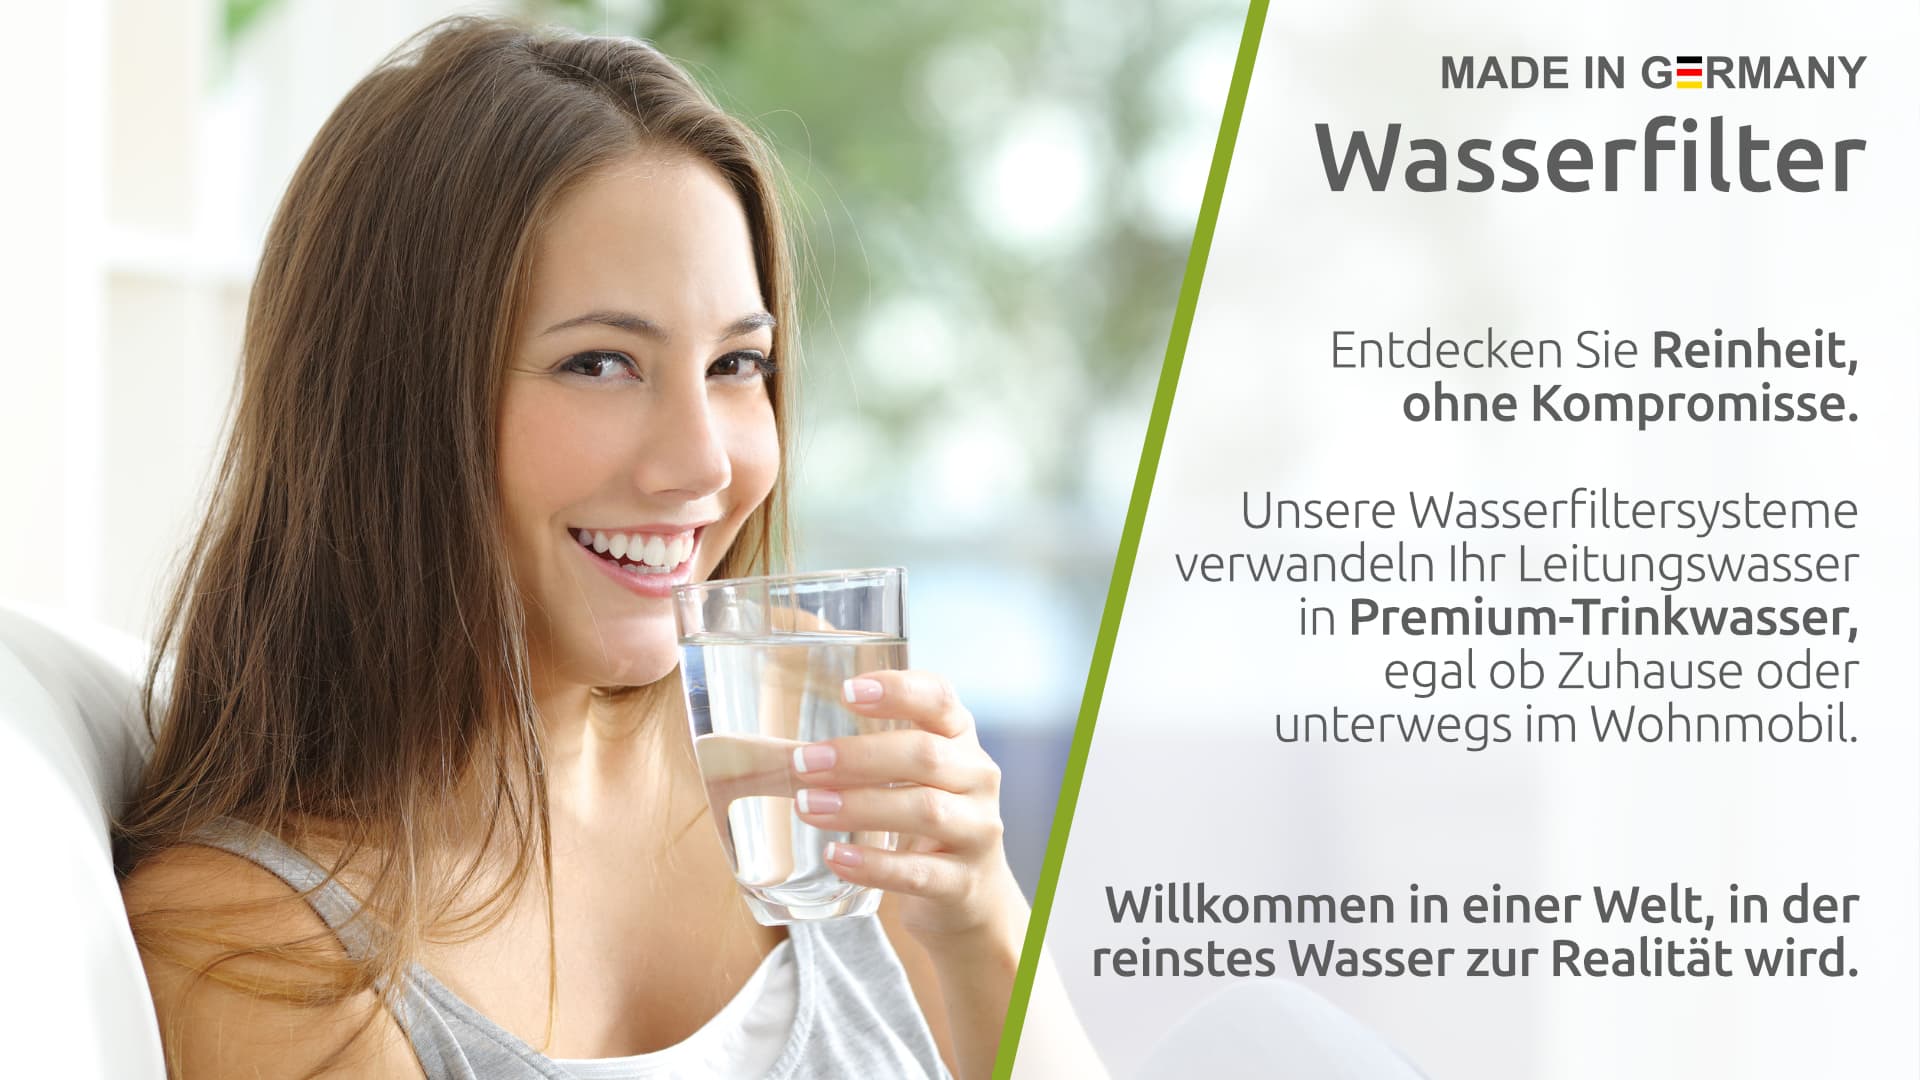 Wasserfilter – Made in Germany. Entdecken Sie Reinheit, ohne Kompromisse. Unsere Wasserfiltersysteme verwandeln Ihr Leitungswasser in Premium-Trinkwasser, egal ob Zuhause oder unterwegs im Wohnmobil. Willkommen in einer Welt, in der reinstes Wasser zur Re